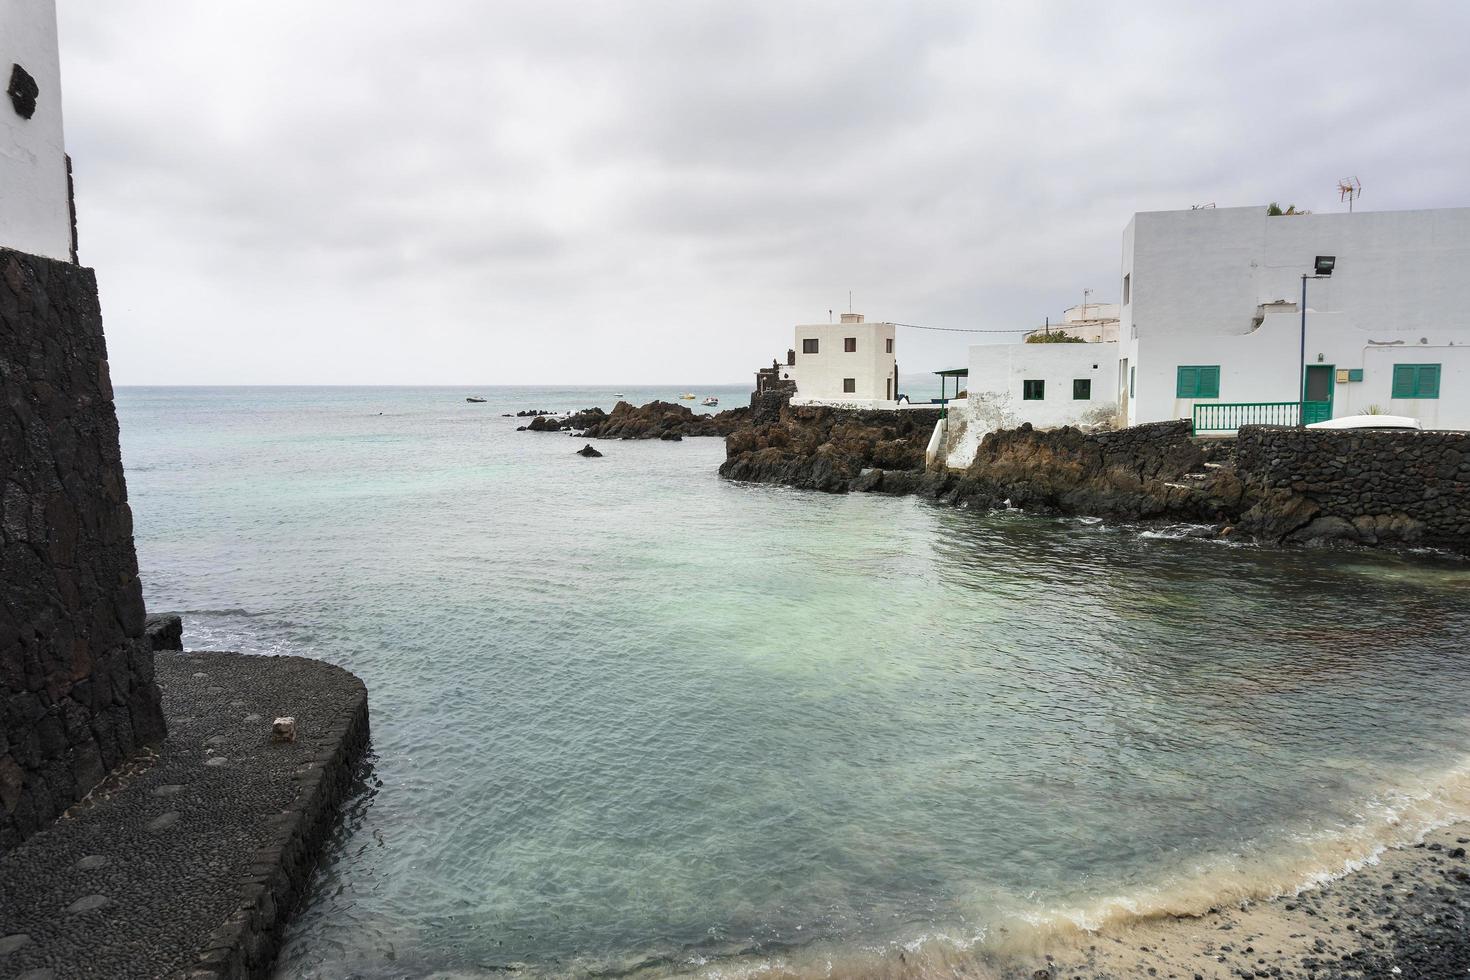 lanzarote, spagna-agosto 7,2018-vista della cittadina di punta mujeres sull'isola di lanzarote famosa per le sue piscine naturali durante una giornata nuvolosa foto